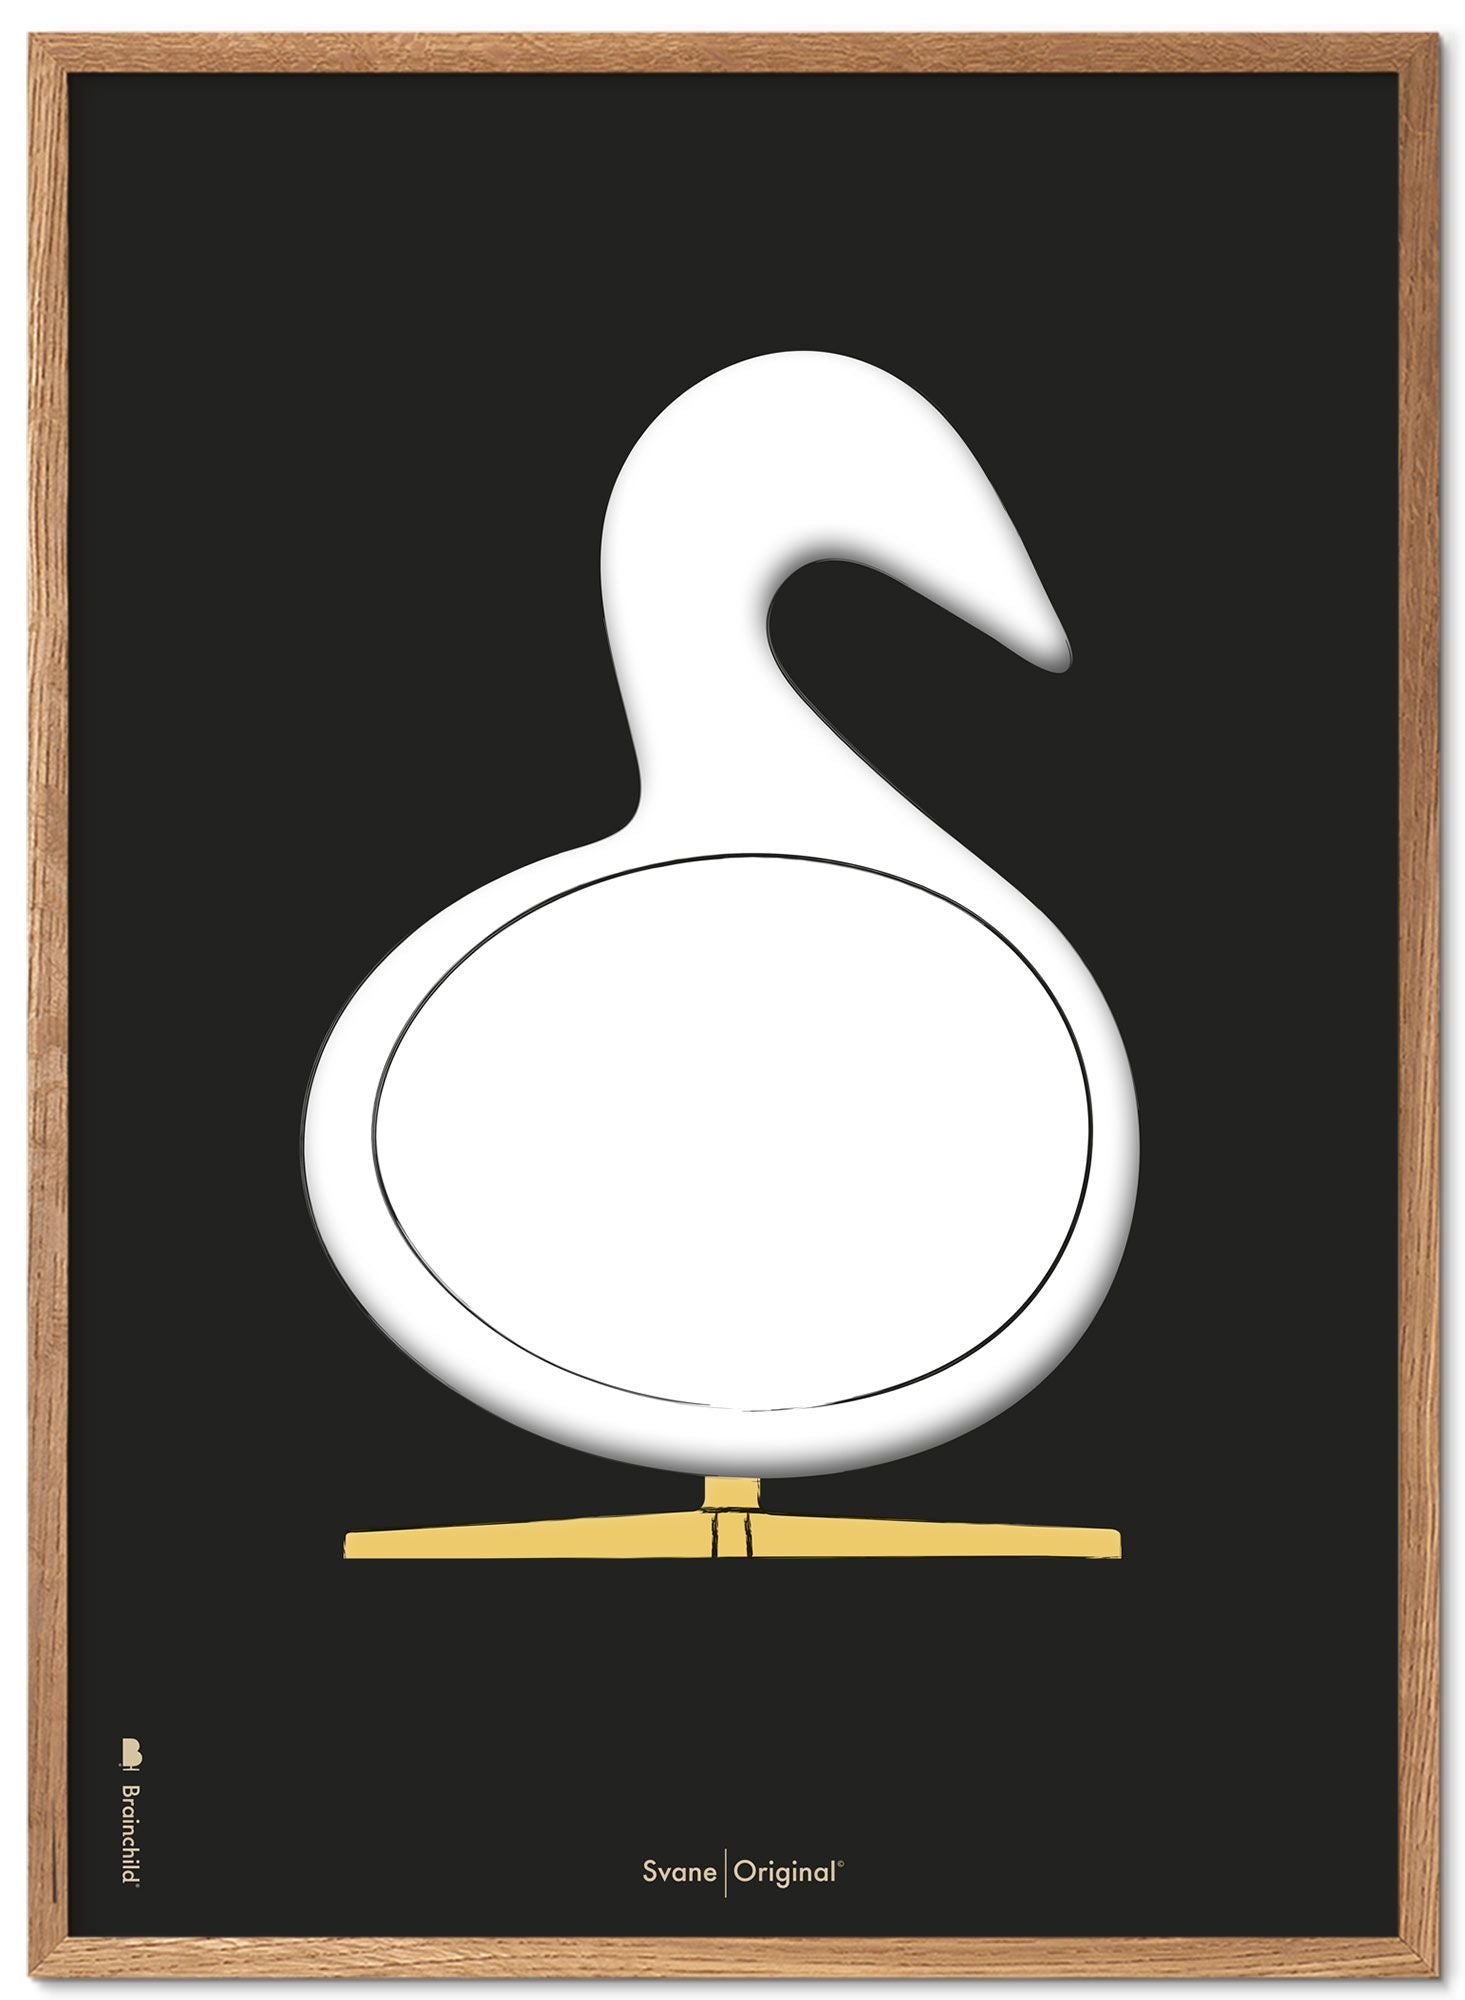 Brainchild Swan Design Sketch Poster Frame Made of Light Wood A5, Black Bakgrund